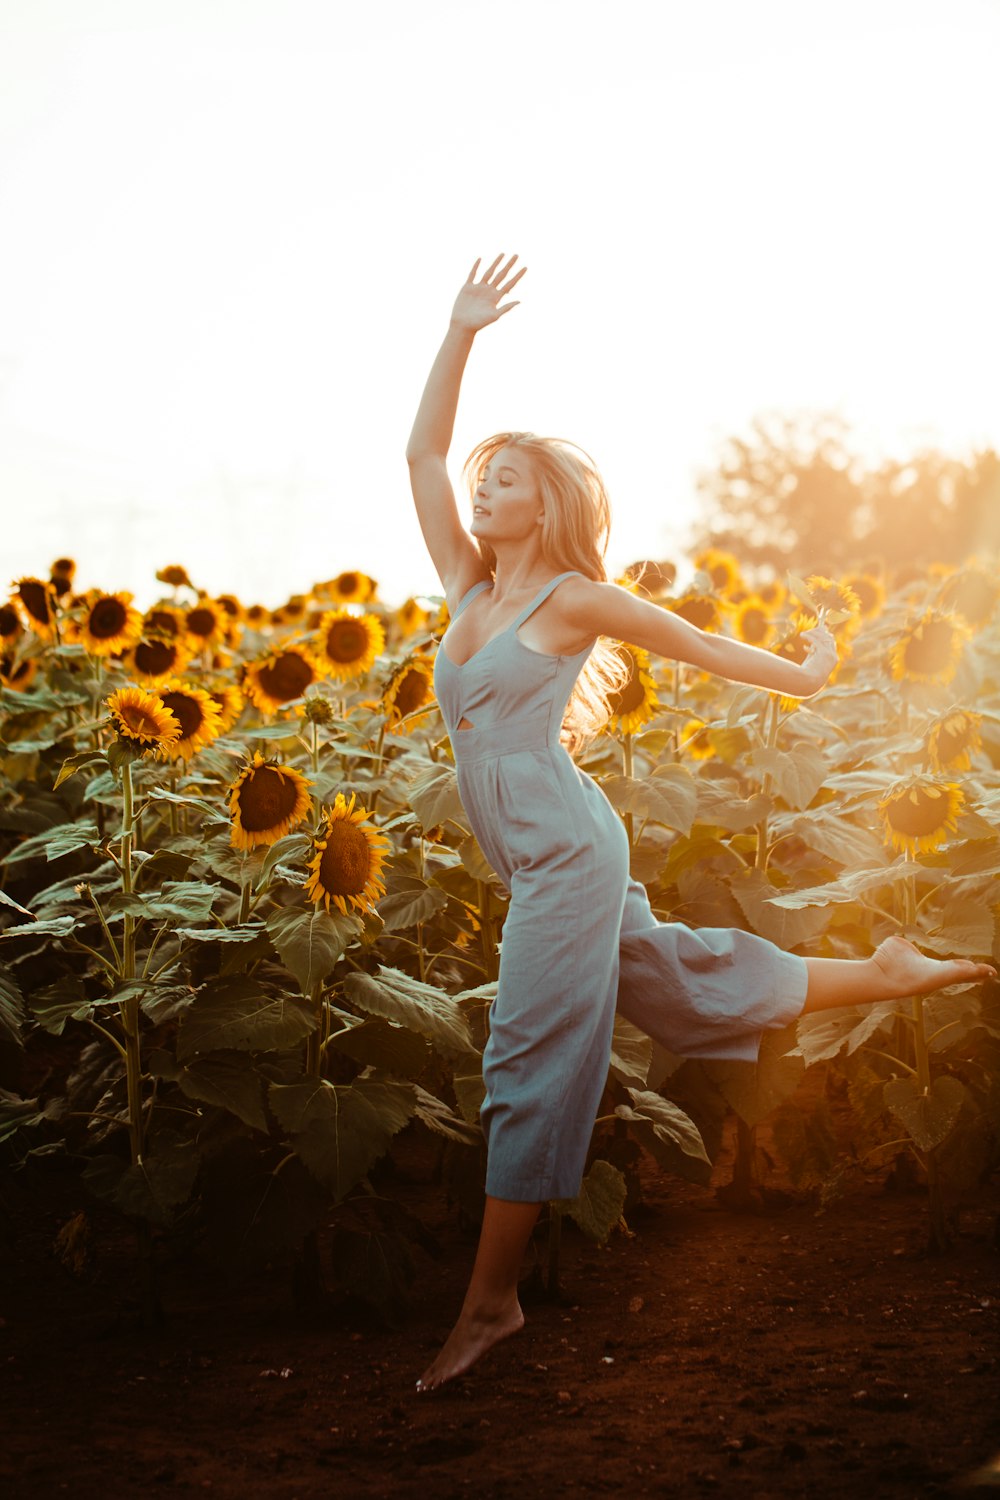 fotografia ravvicinata di donna che balla accanto al campo di girasoli durante l'ora d'oro